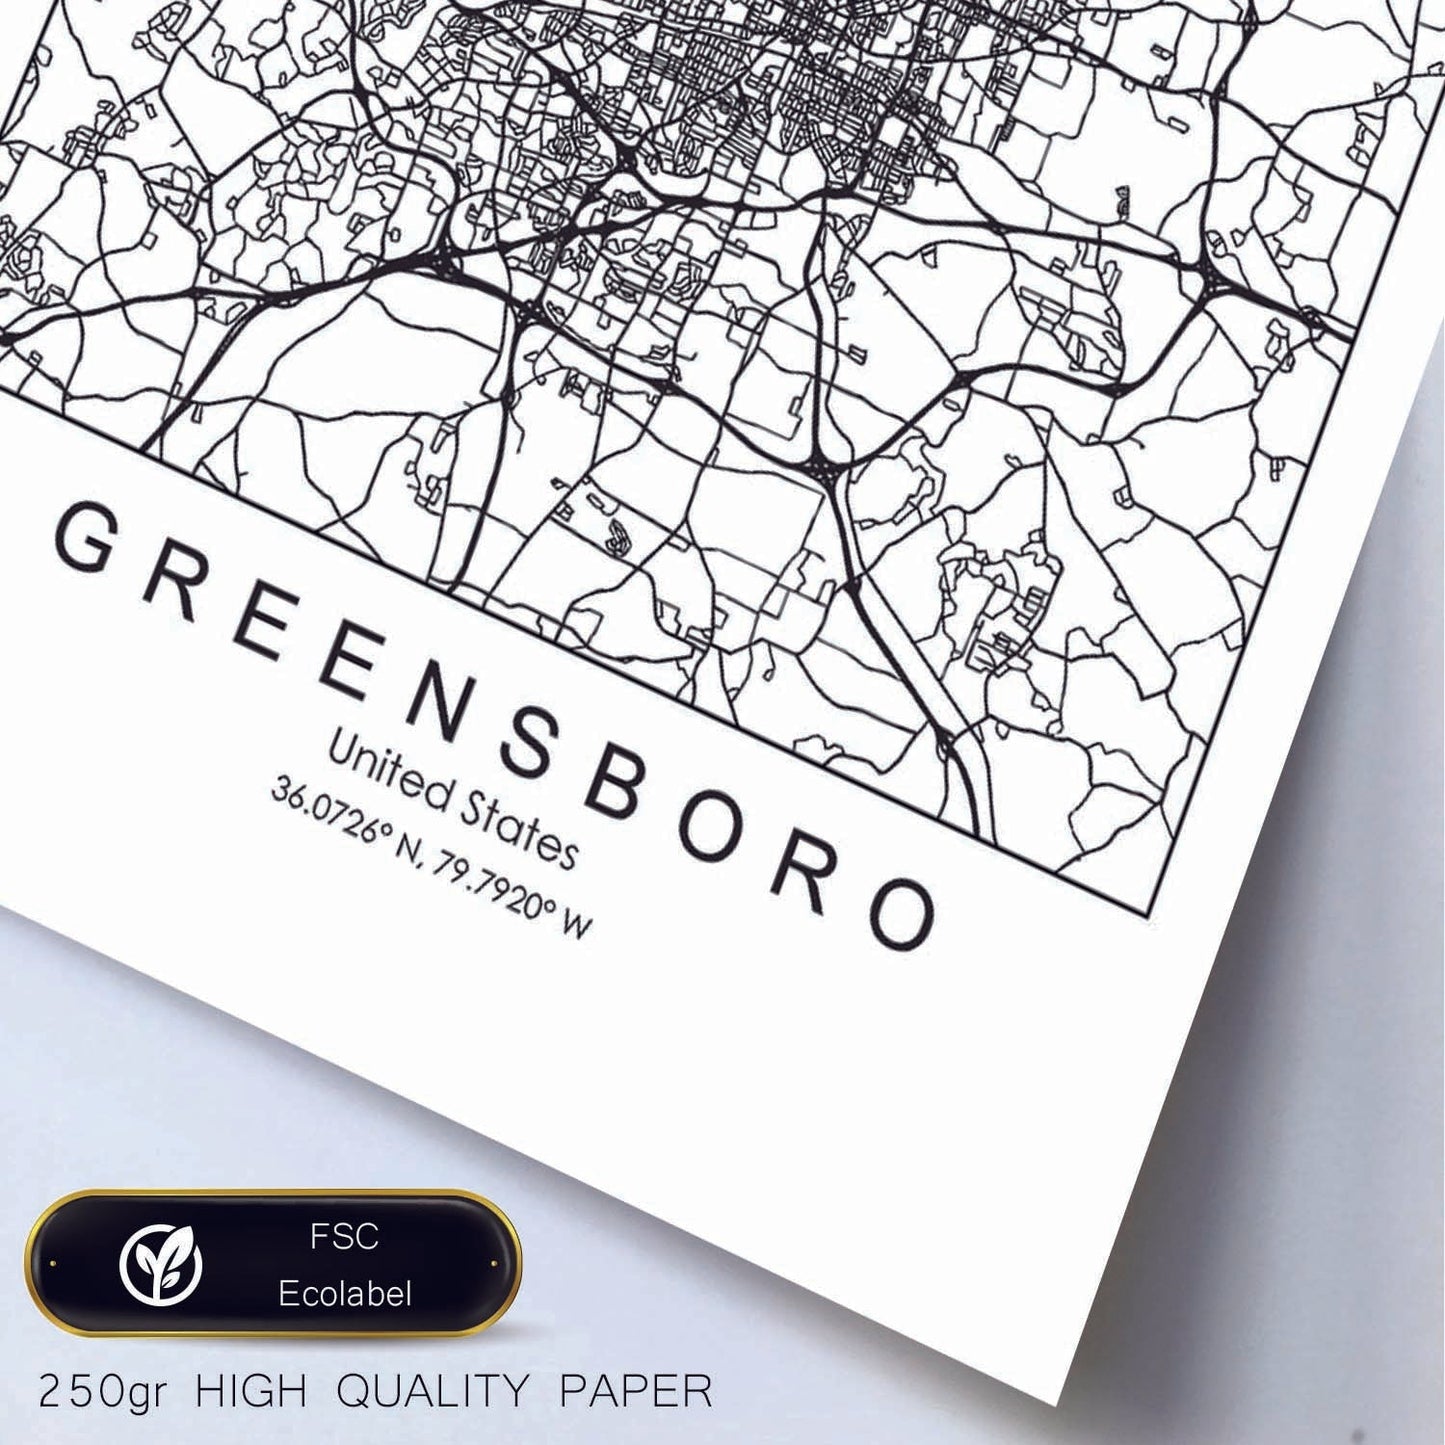 Poster con mapa de Greensboro. Lámina de Estados Unidos, con imágenes de mapas y carreteras-Artwork-Nacnic-Nacnic Estudio SL